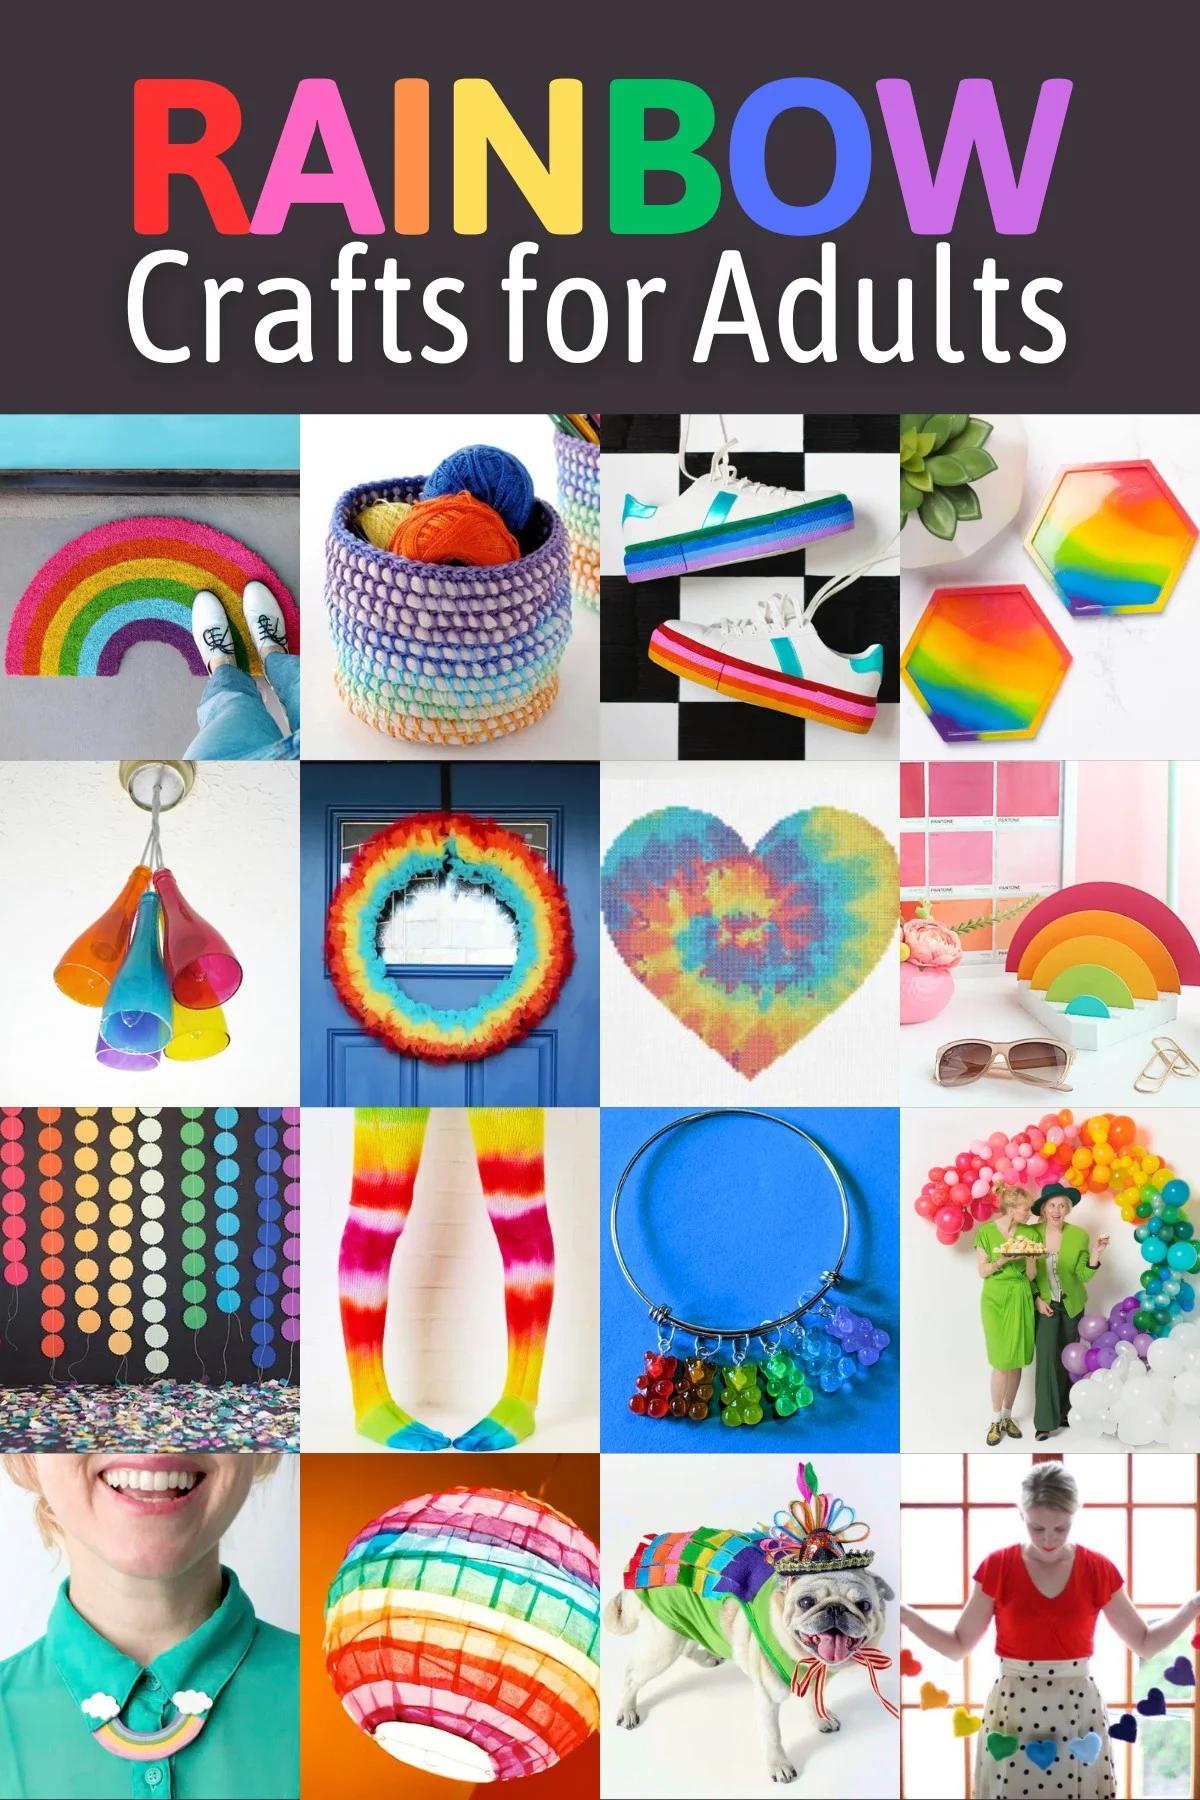 https://modpodgerocksblog.b-cdn.net/wp-content/uploads/2023/03/Rainbow-Crafts-for-Adults.jpg.webp